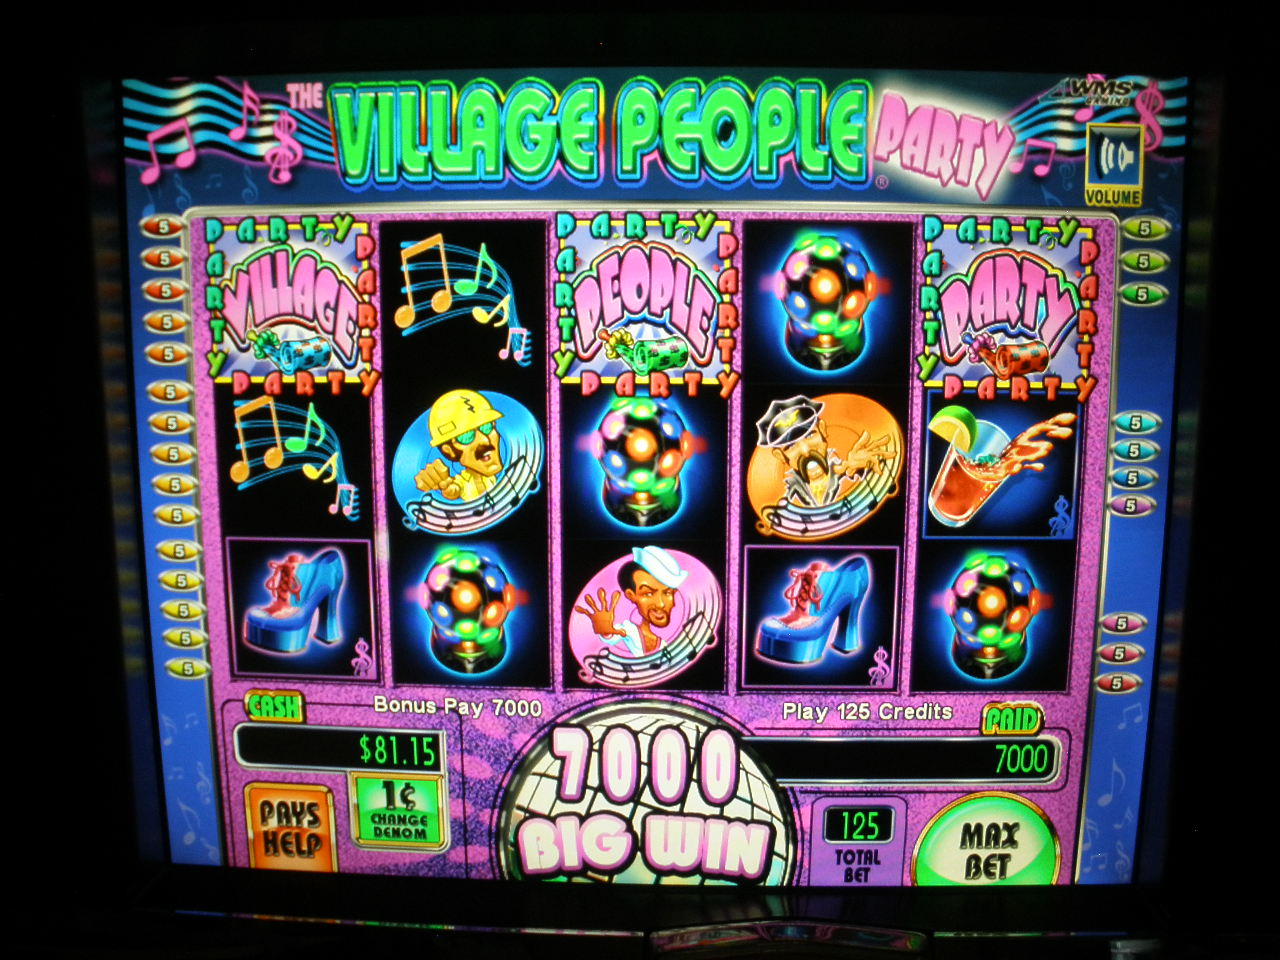 Party Line Slot Machine